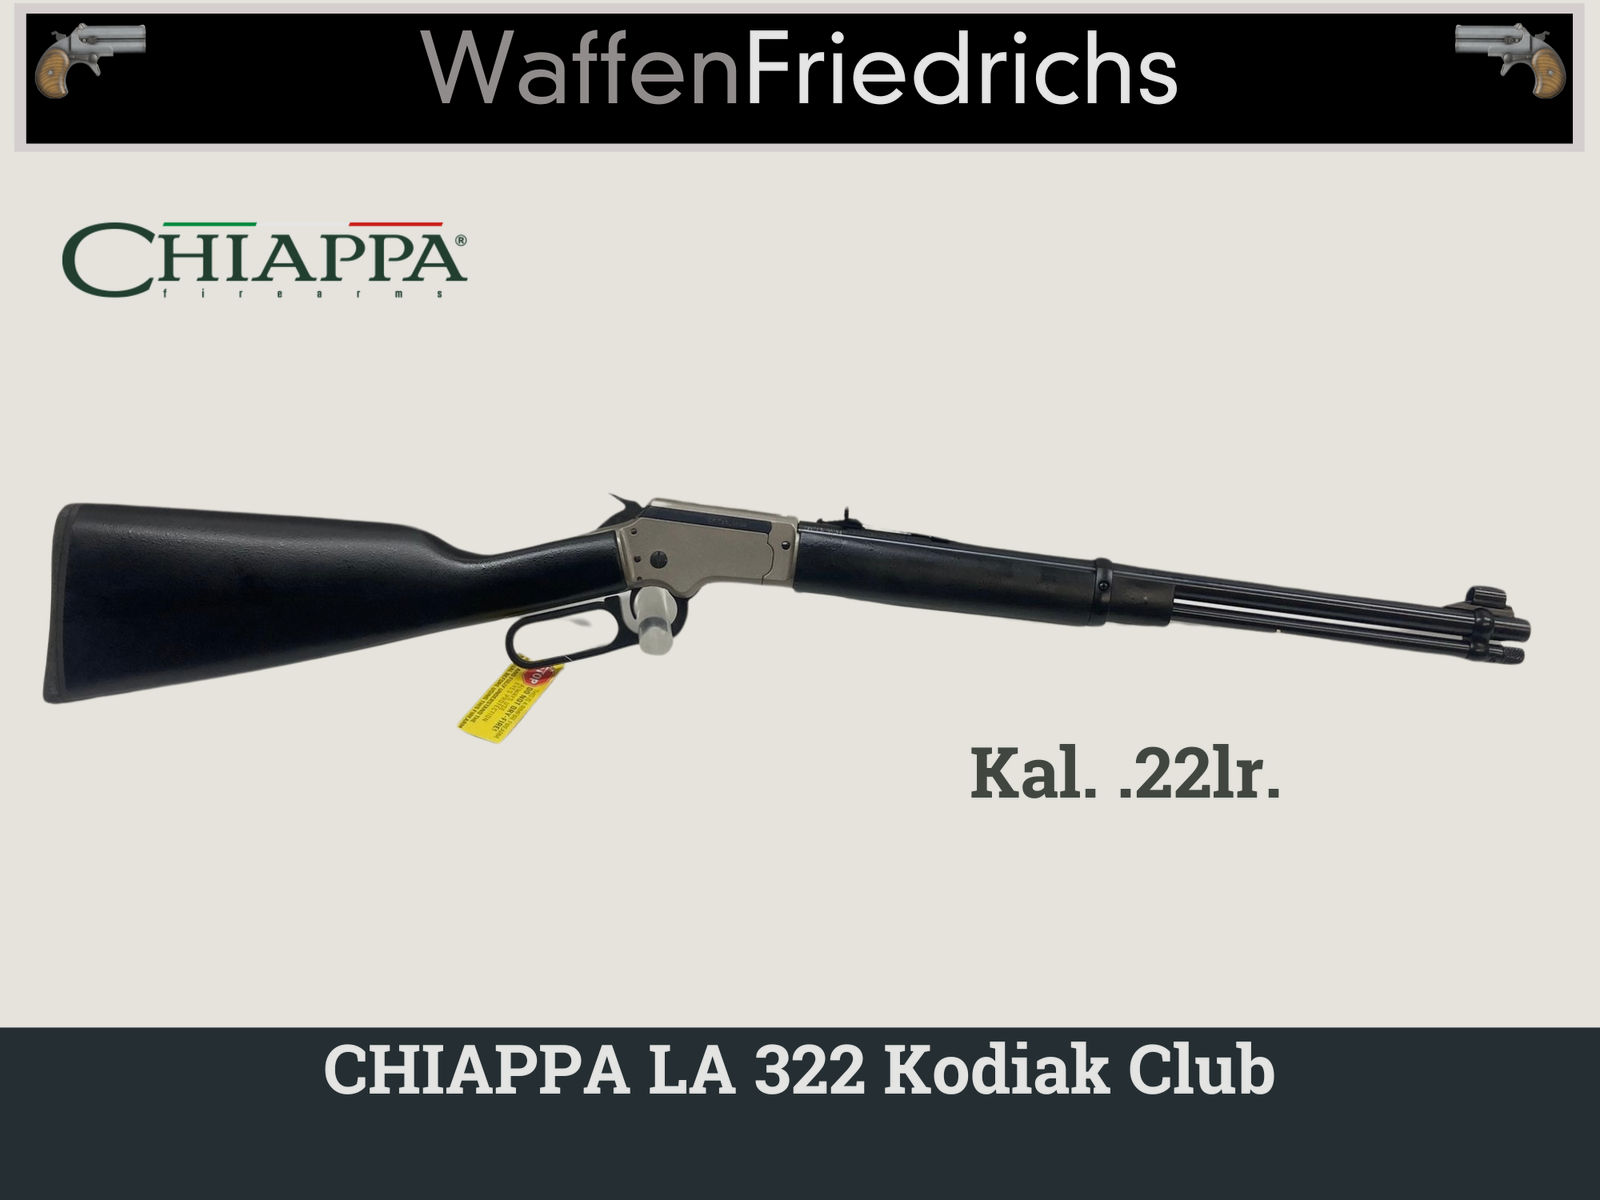 CHIAPPA LA 322 Kodiak Club - WaffenFriedrichs